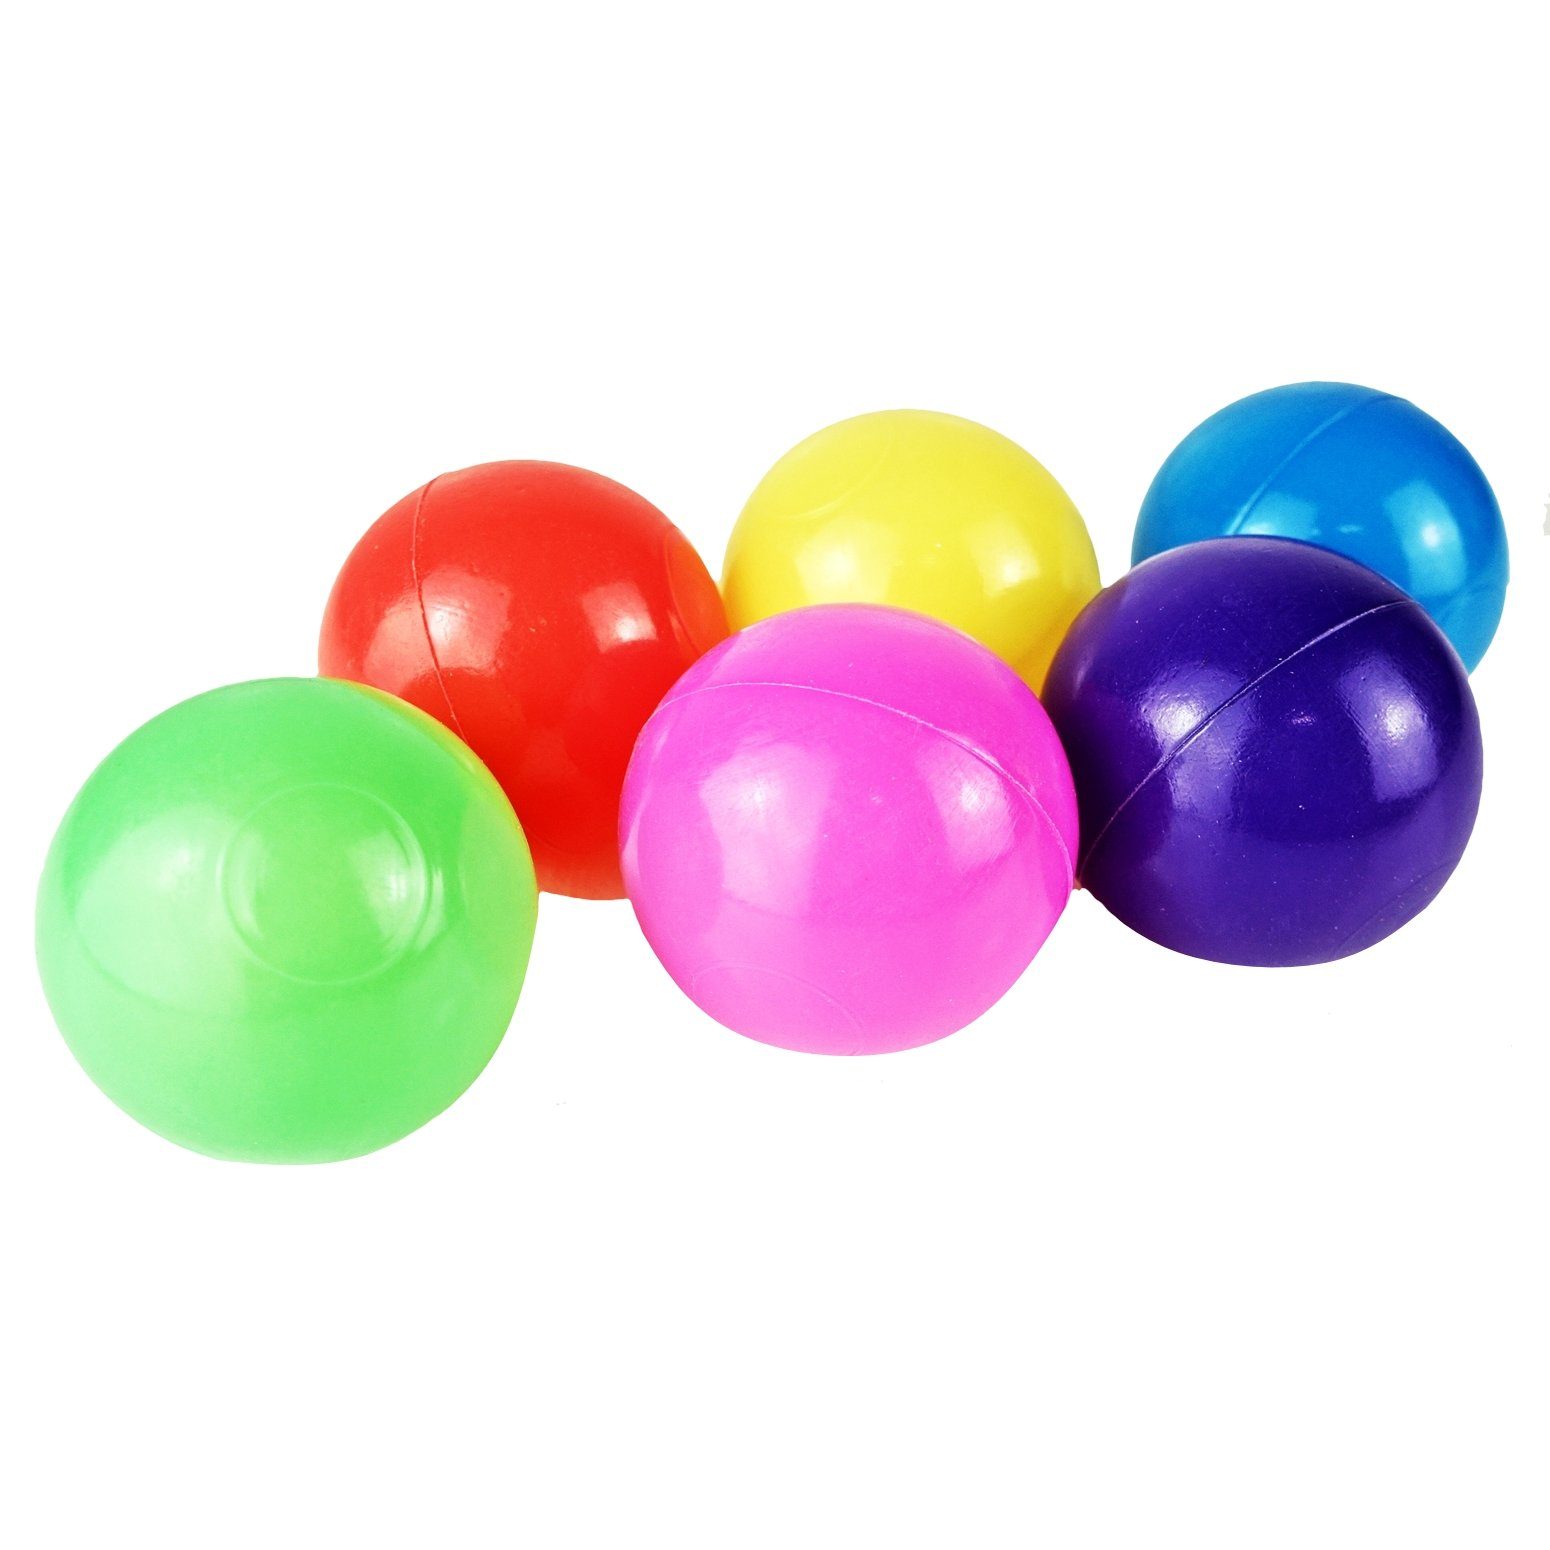 Bällebad Farben BAYLI 400 Softball - Bällebad-Bälle - Ball Bälle Ø bunte Mischung 5,5cm